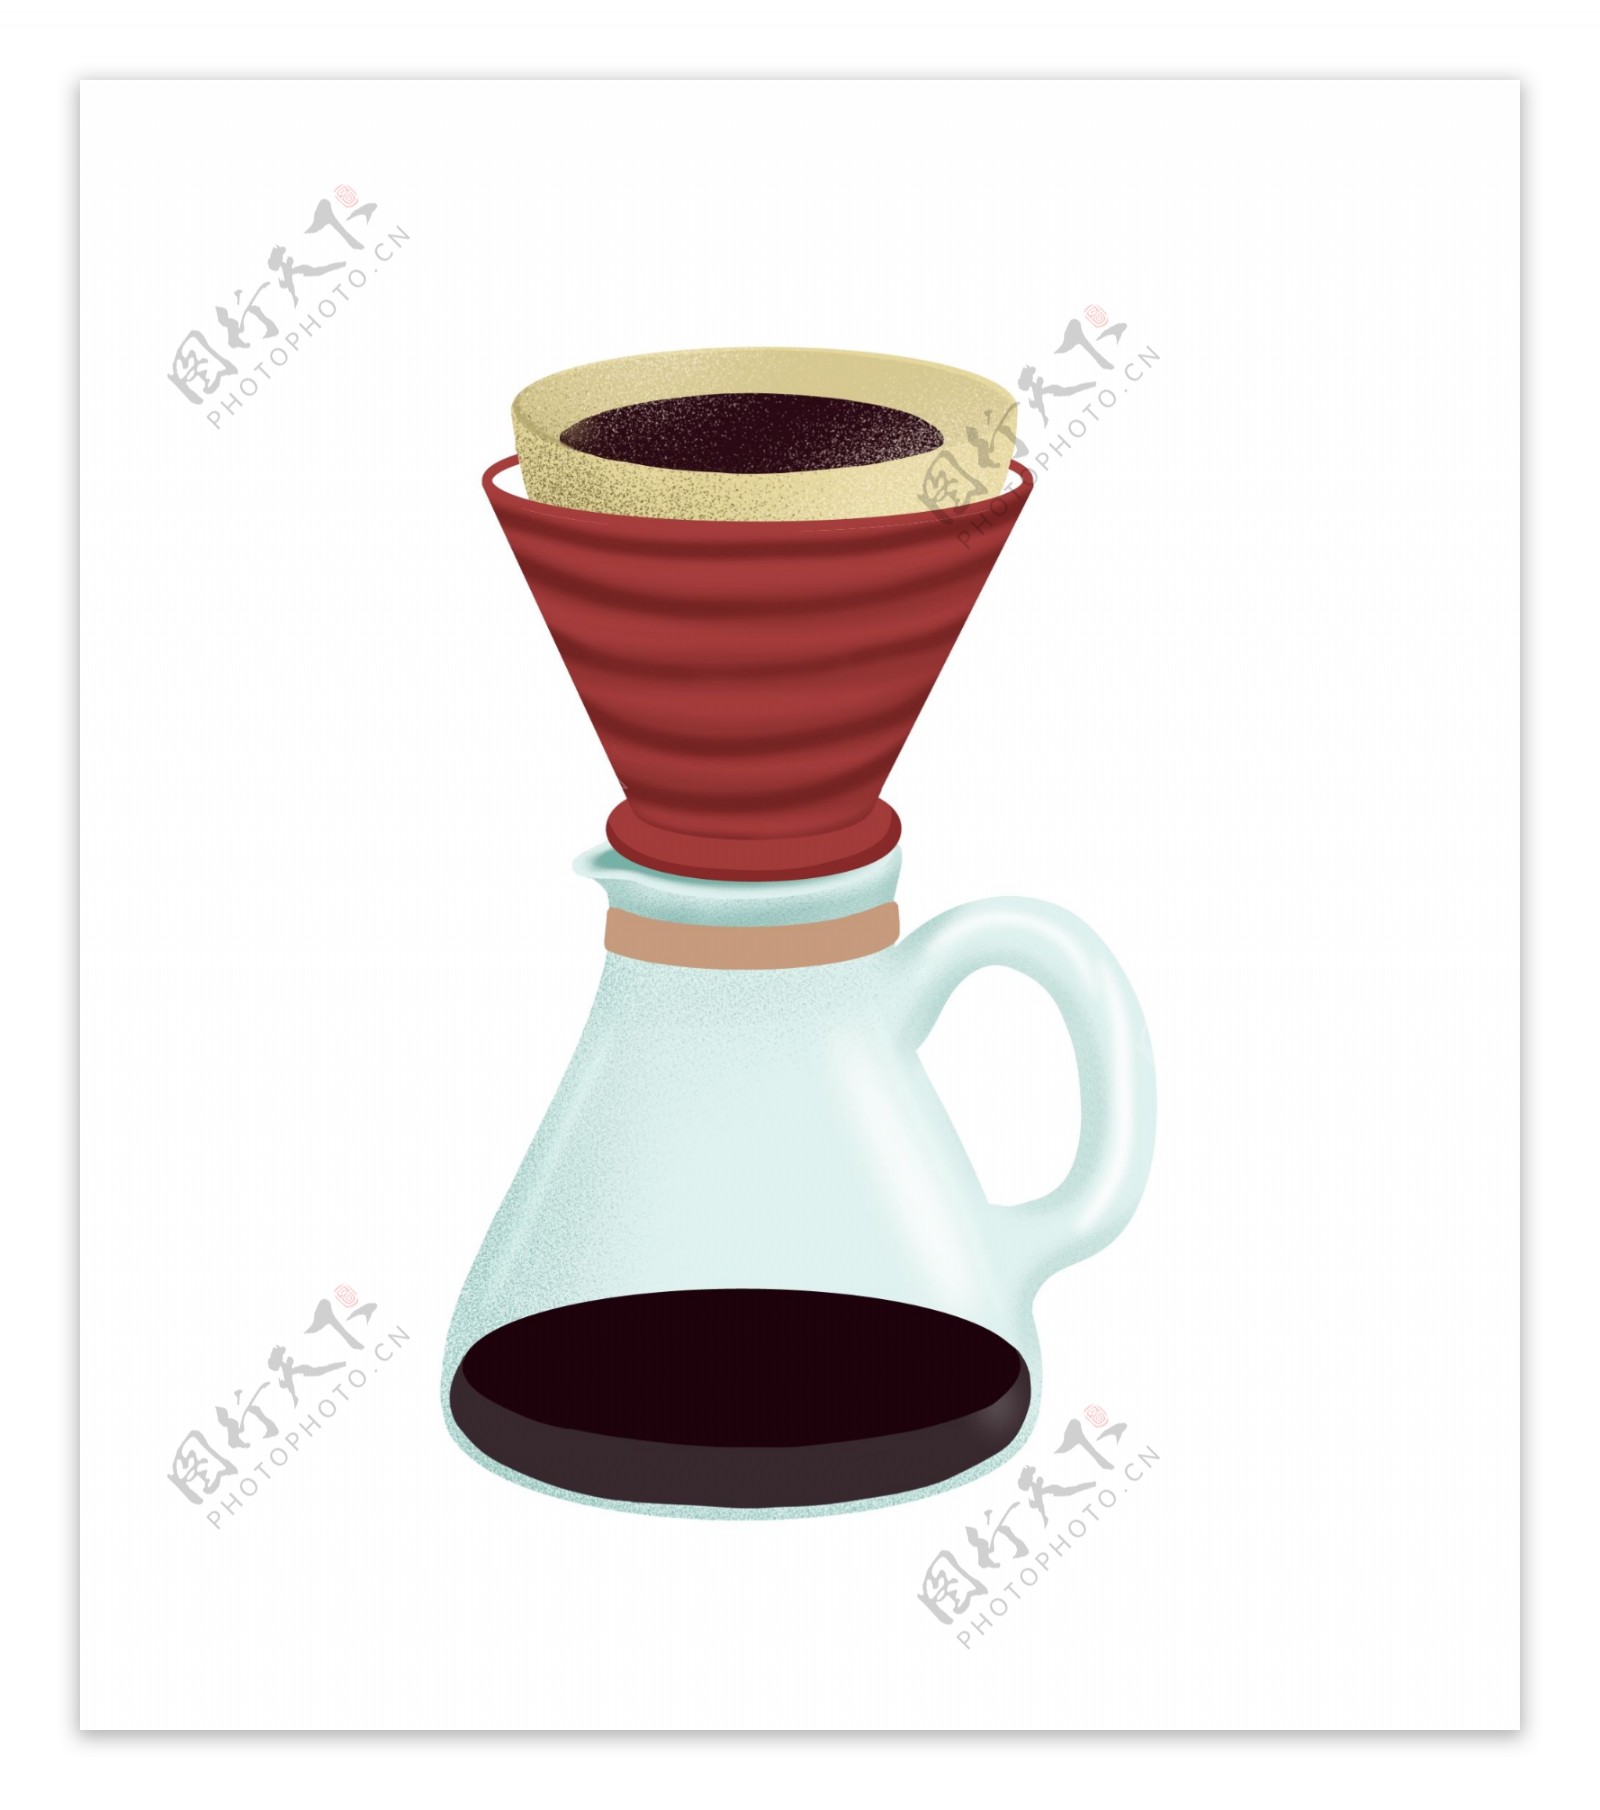 淡蓝色咖啡滴漏壶家用咖啡壶装饰图案